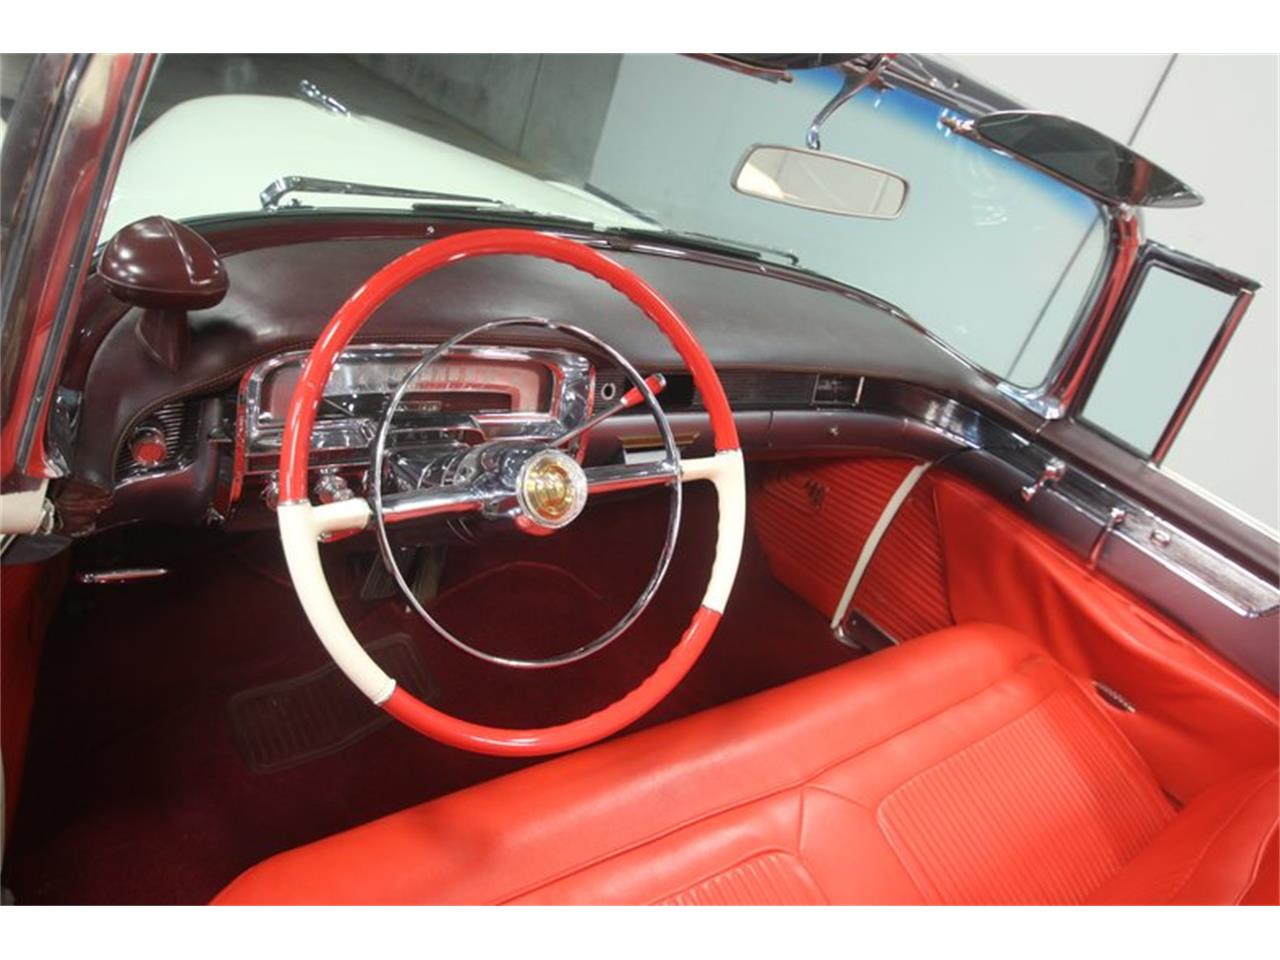 1954 cadillac eldorado for sale classiccars com cc 1089528 1954 cadillac eldorado for sale